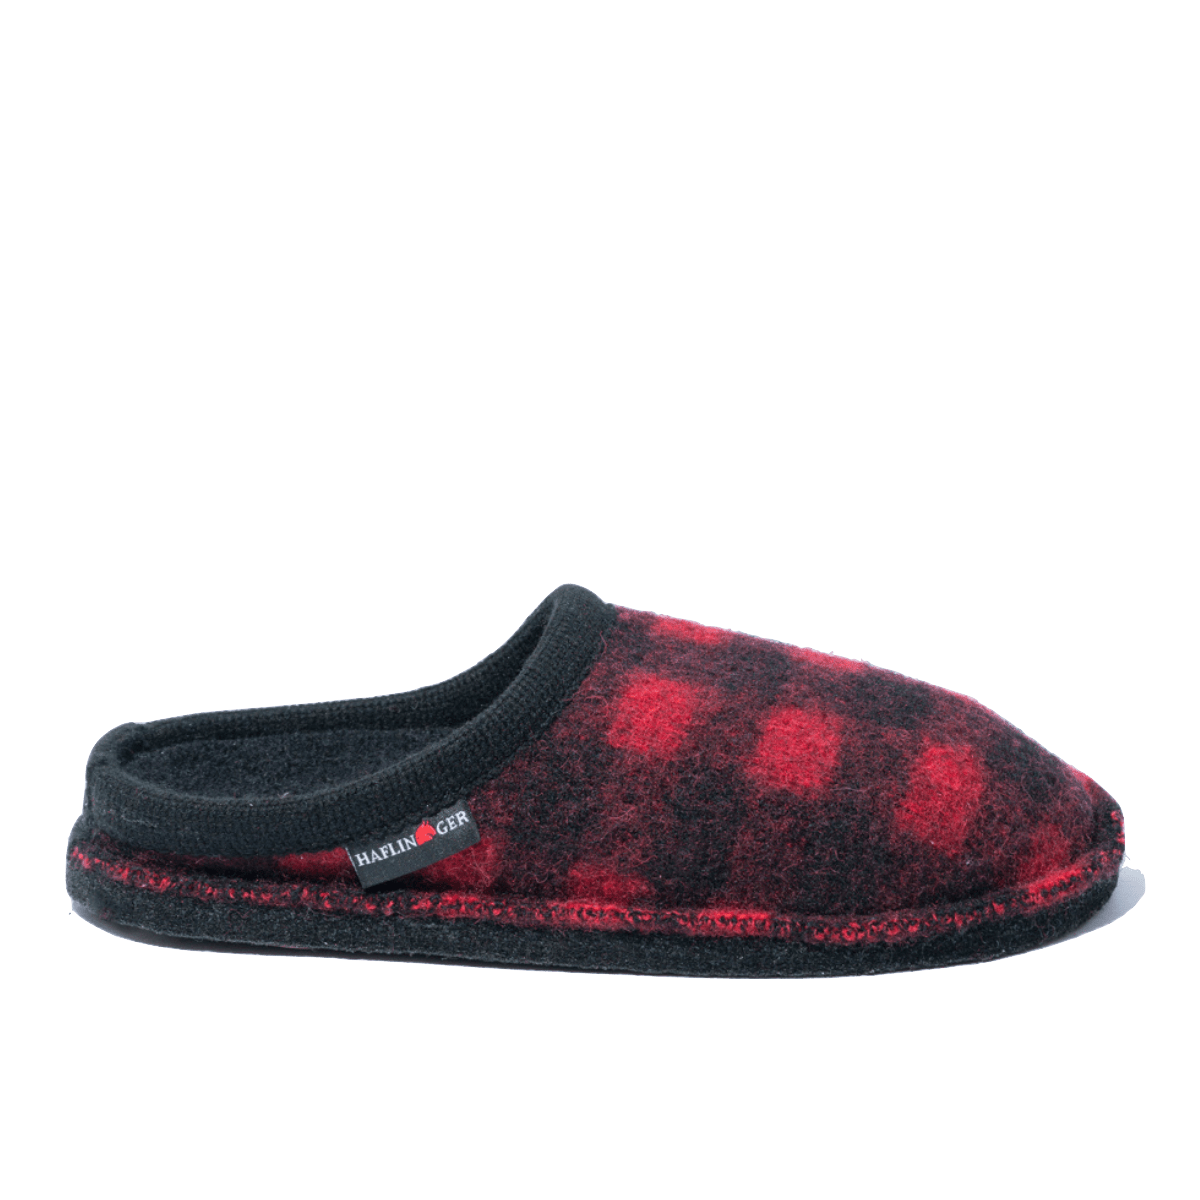 Pantofola Haflinger Flair Plaid Nero/Rosso - Haflinger - Calzature Savorè